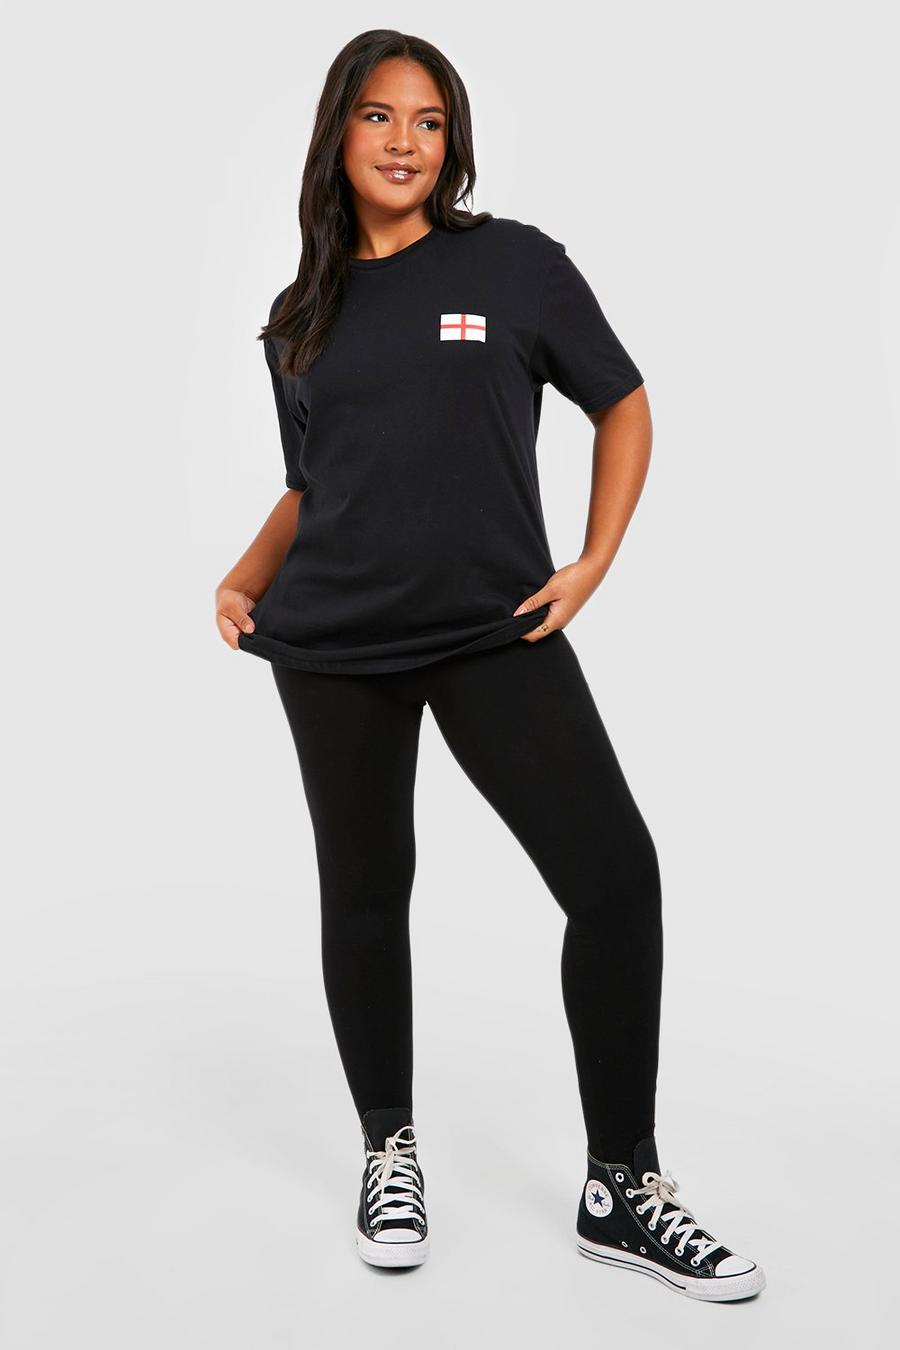 Camiseta Plus con estampado de fútbol y bandera de Inglaterra, Black nero